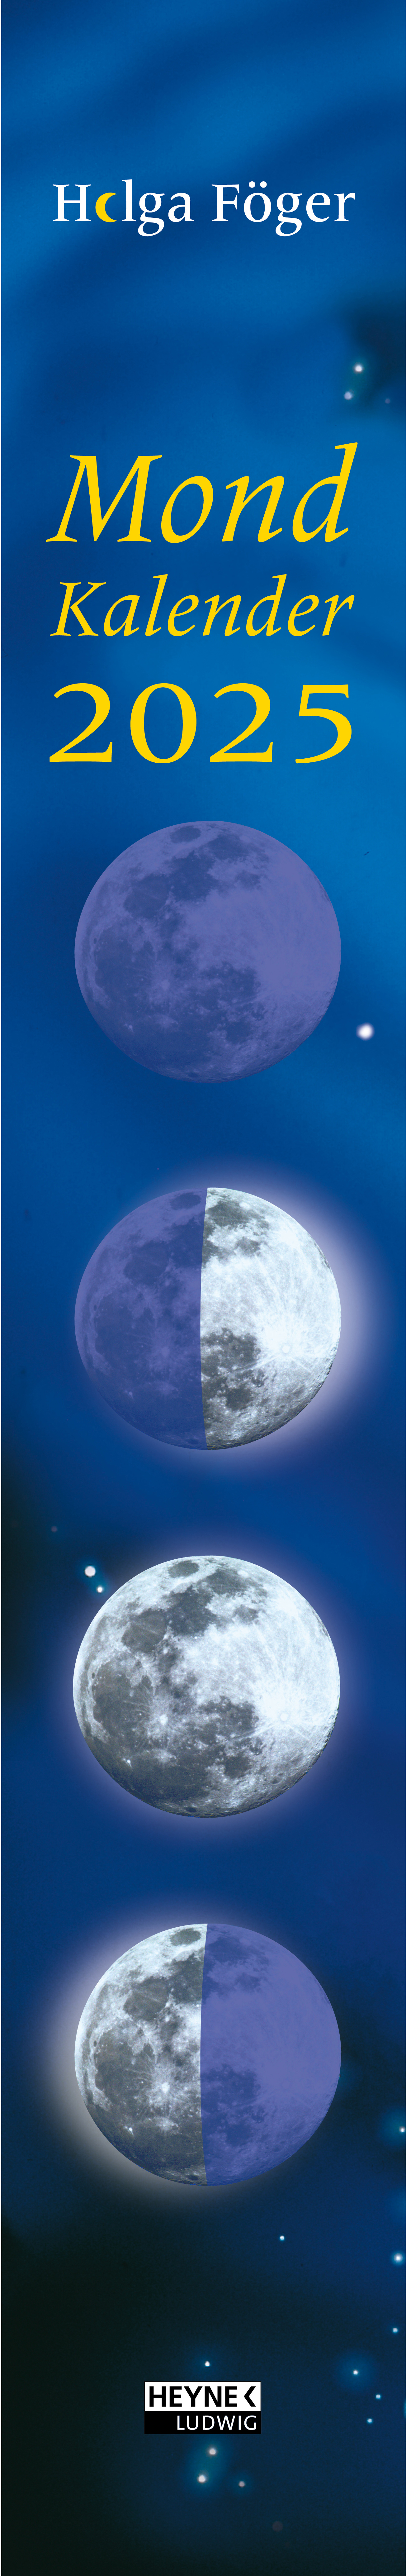 HEYNE Mondkalender f.jeden Tag 2025 783453239456 1M/1P DE 11x70cm